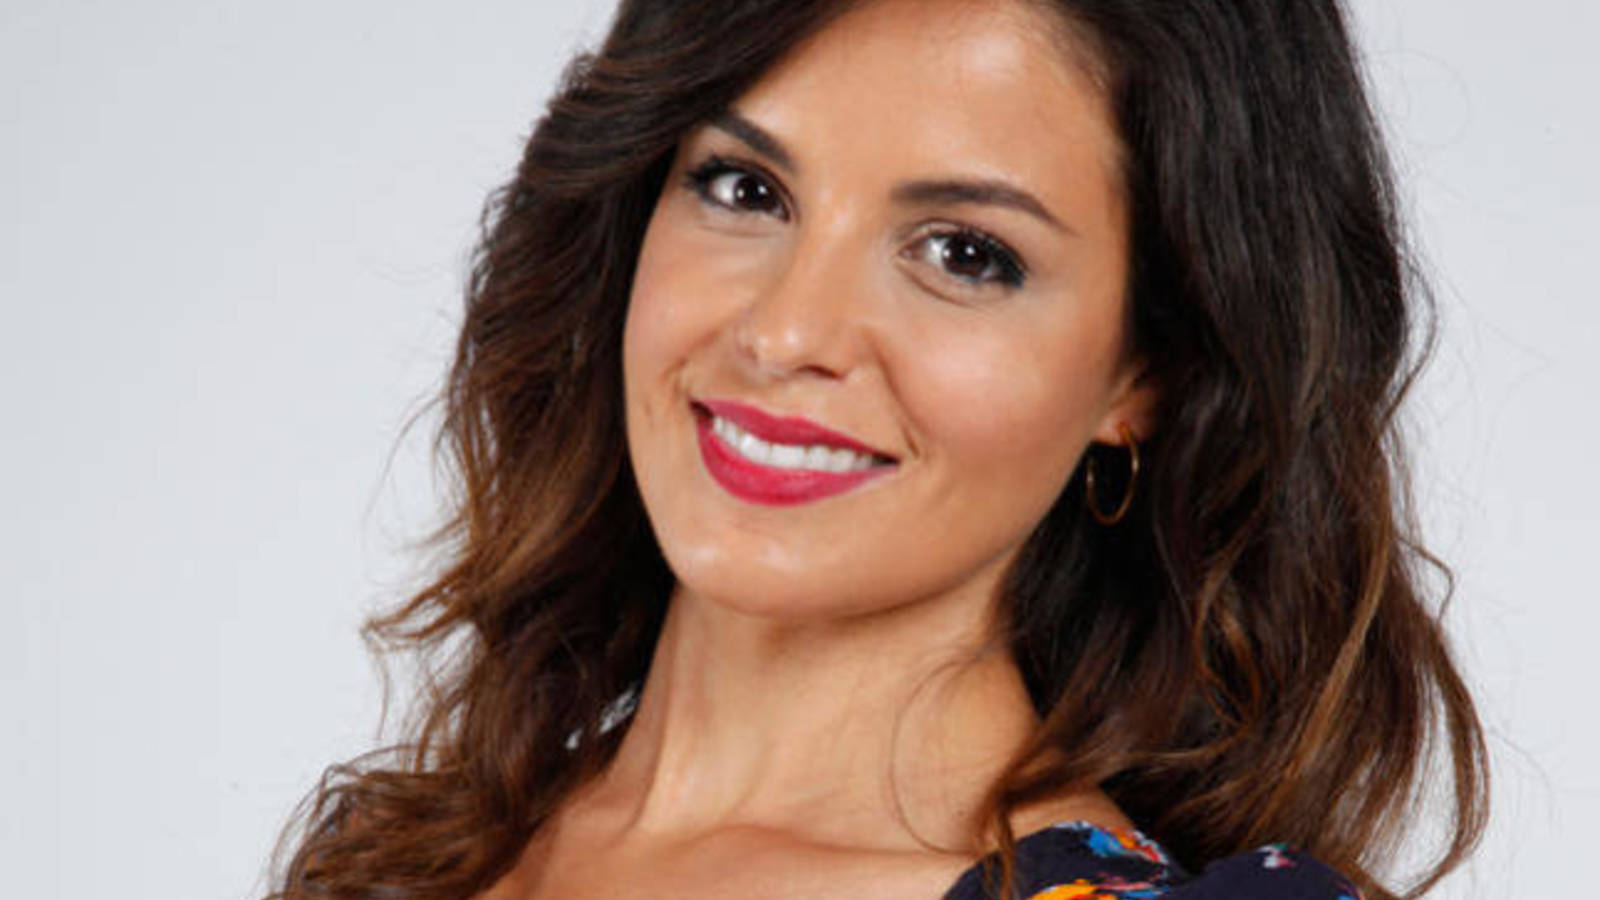 La actriz y presentadora Marta TornÃ© ha publicado una imagen sin ropa en In...